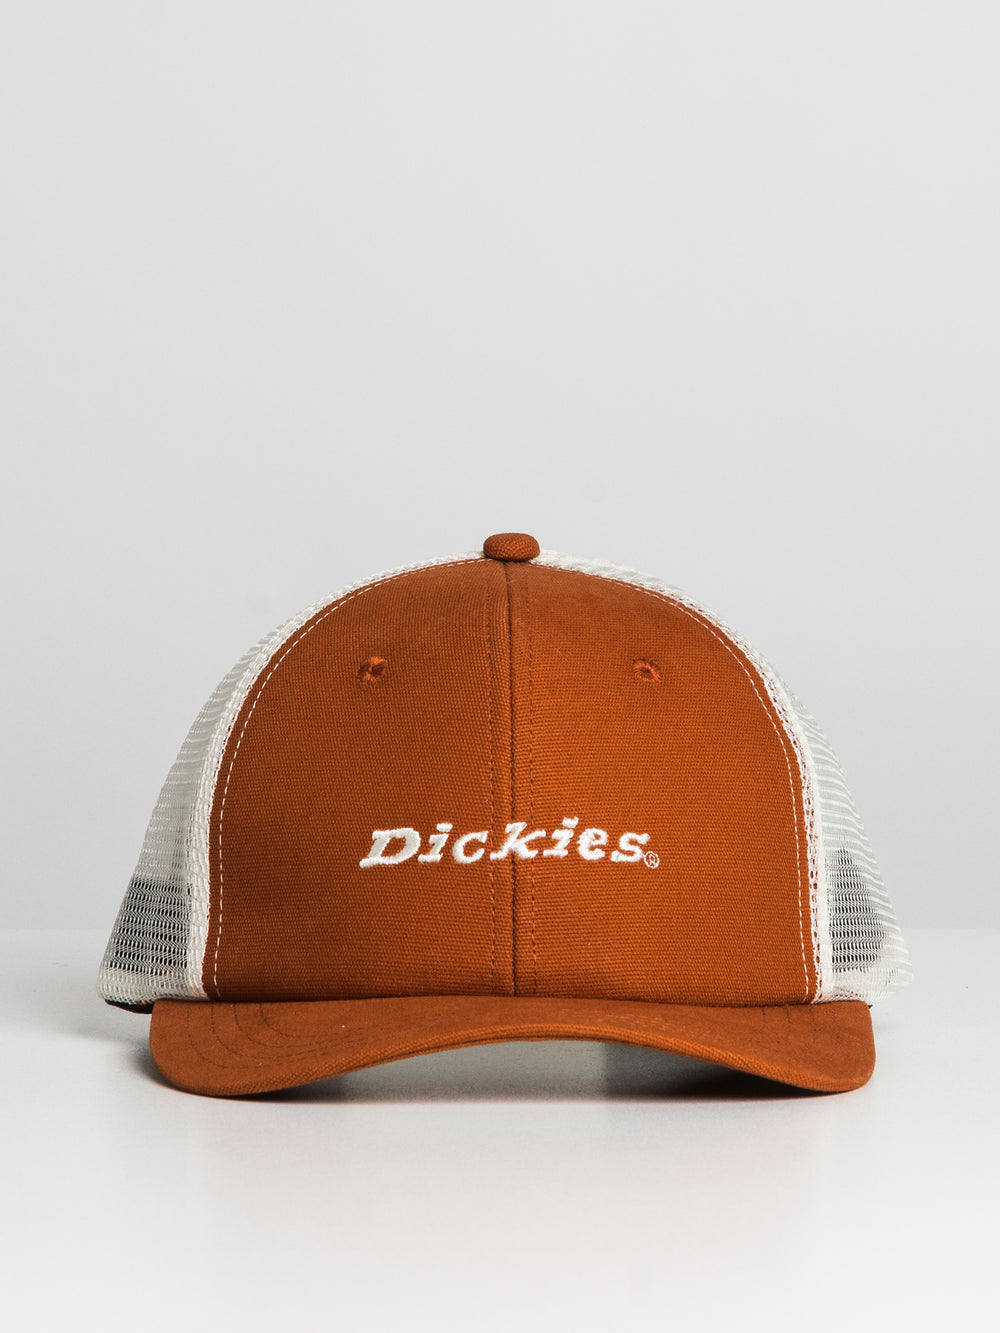 DICKIES DICKIES TRUCKER HAT